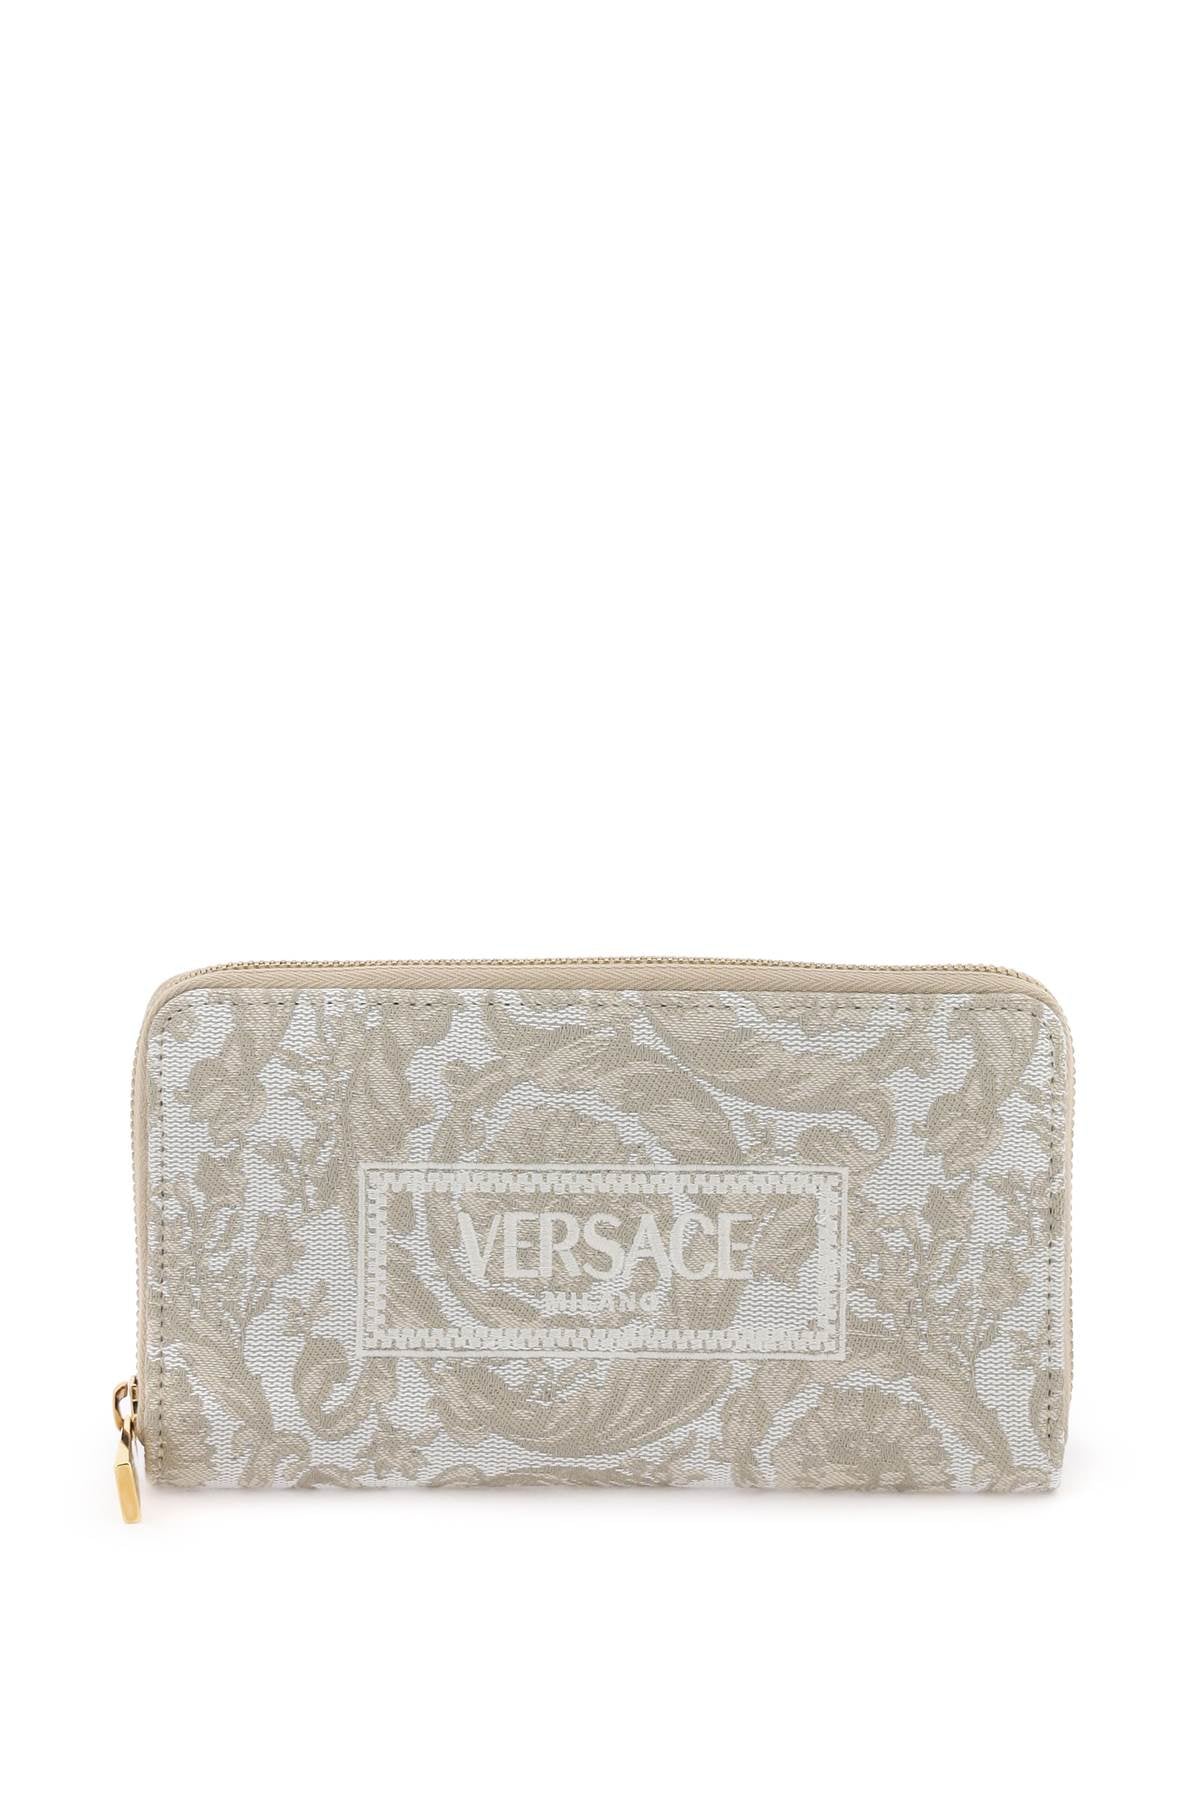 Versace barocco long wallet-0